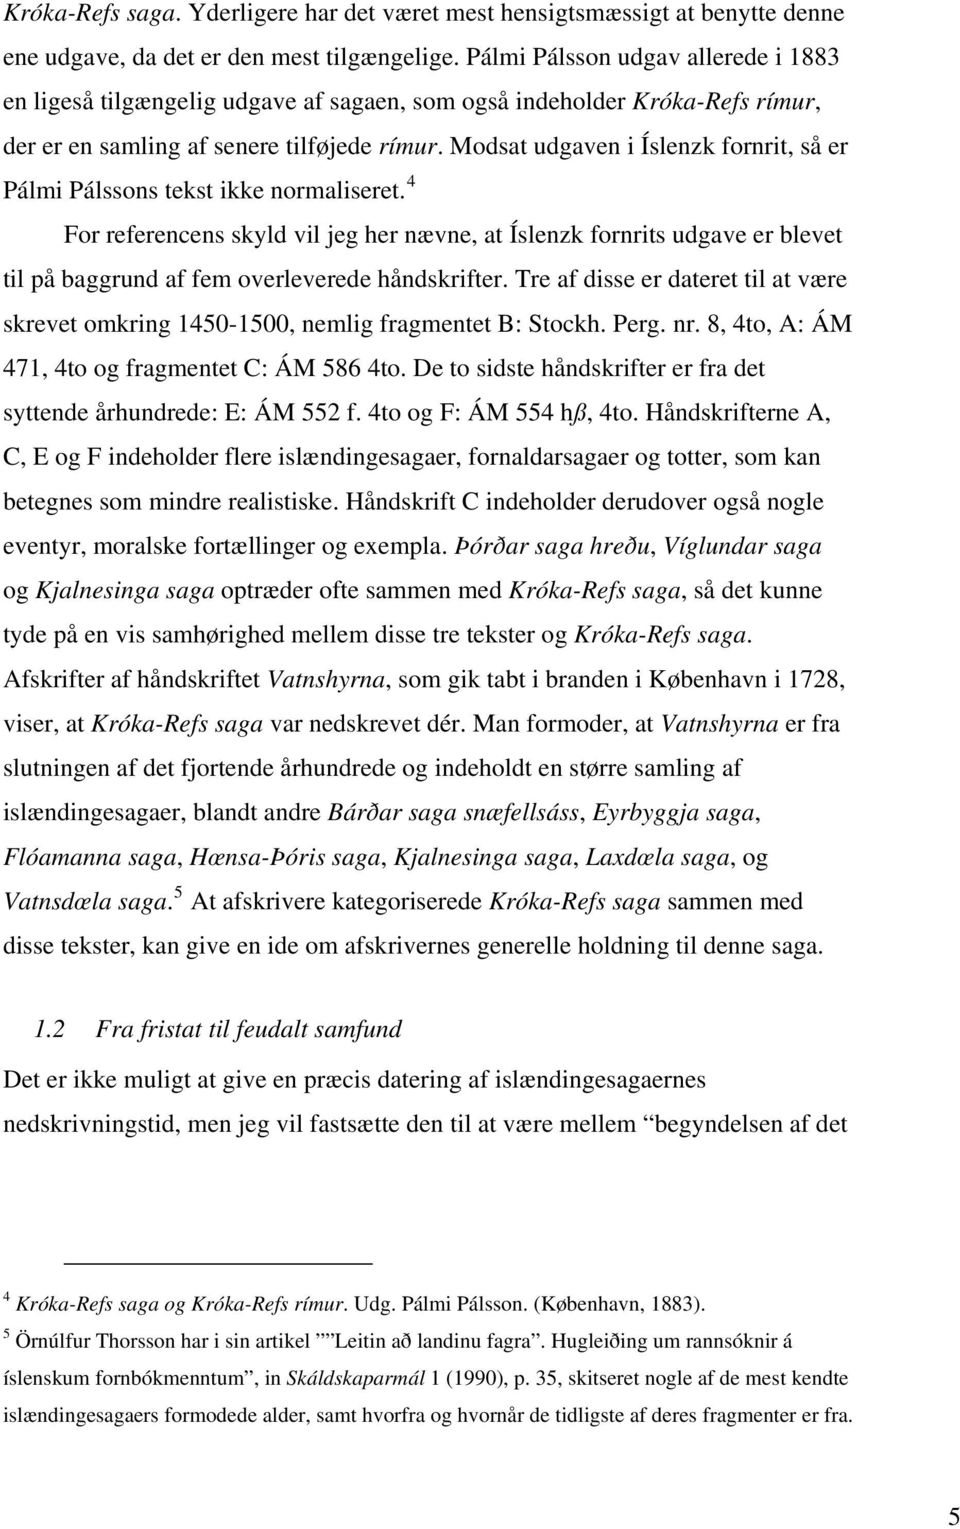 Modsat udgaven i Íslenzk fornrit, så er Pálmi Pálssons tekst ikke normaliseret.